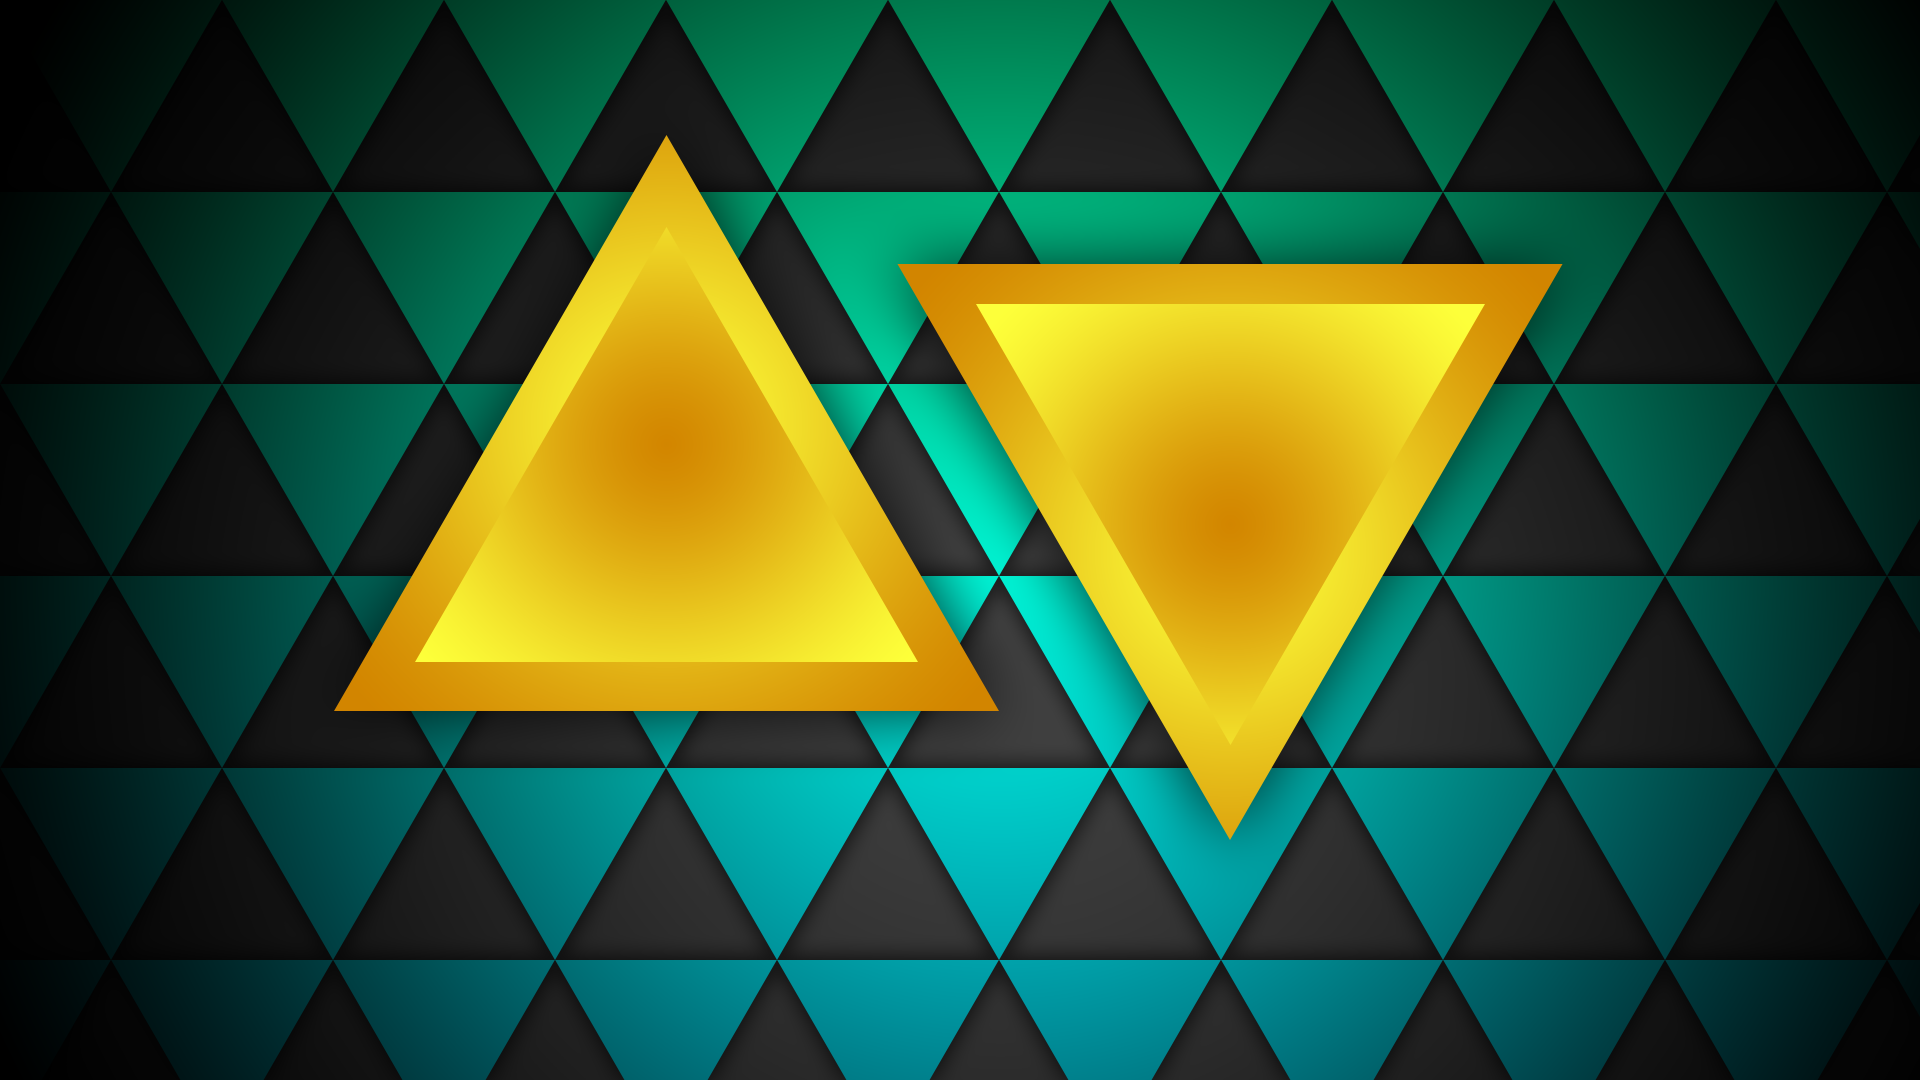 General 1920x1080 minimalism triangle yellow green pattern digital art